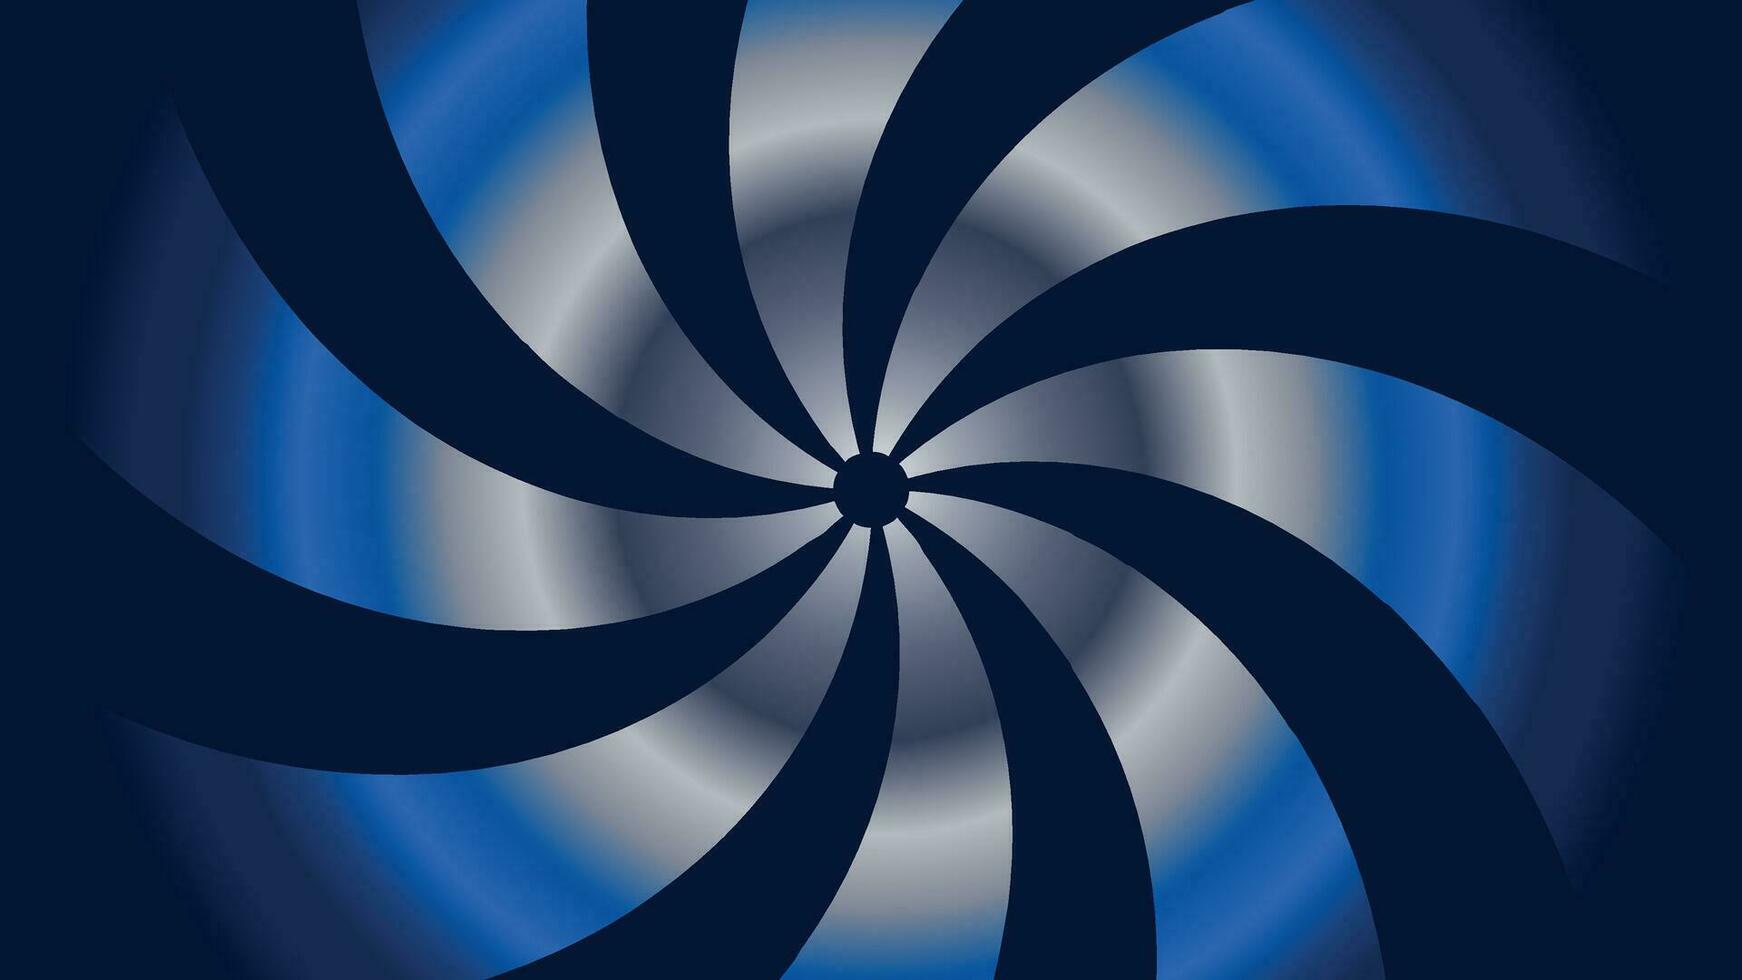 abstarct spiral vågig linje bakgrund i enkel och minimalistisk stil. vektor